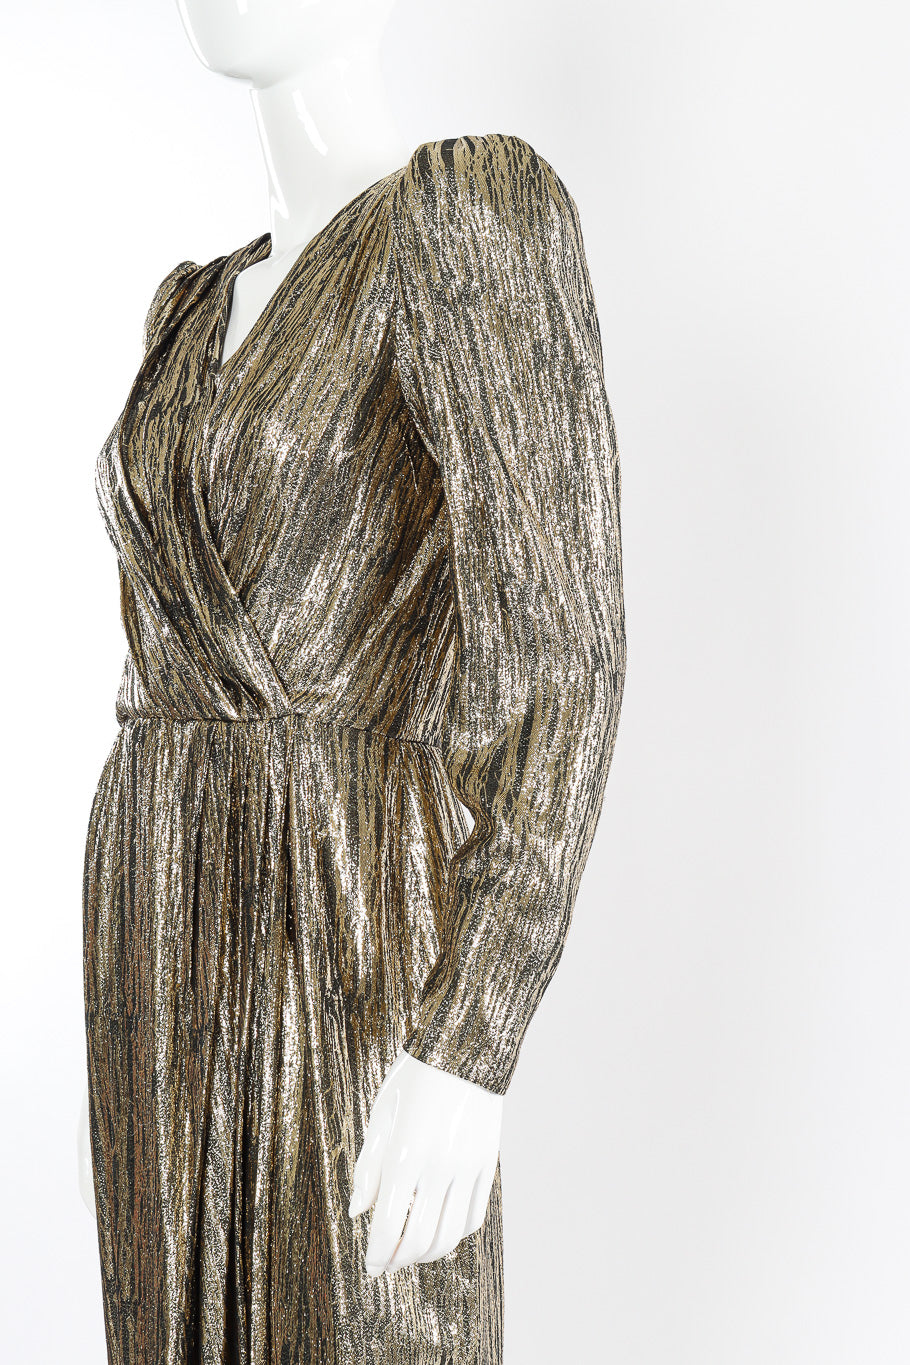 Metallic dress by Nolan Miller mannequin sleeve @recessla